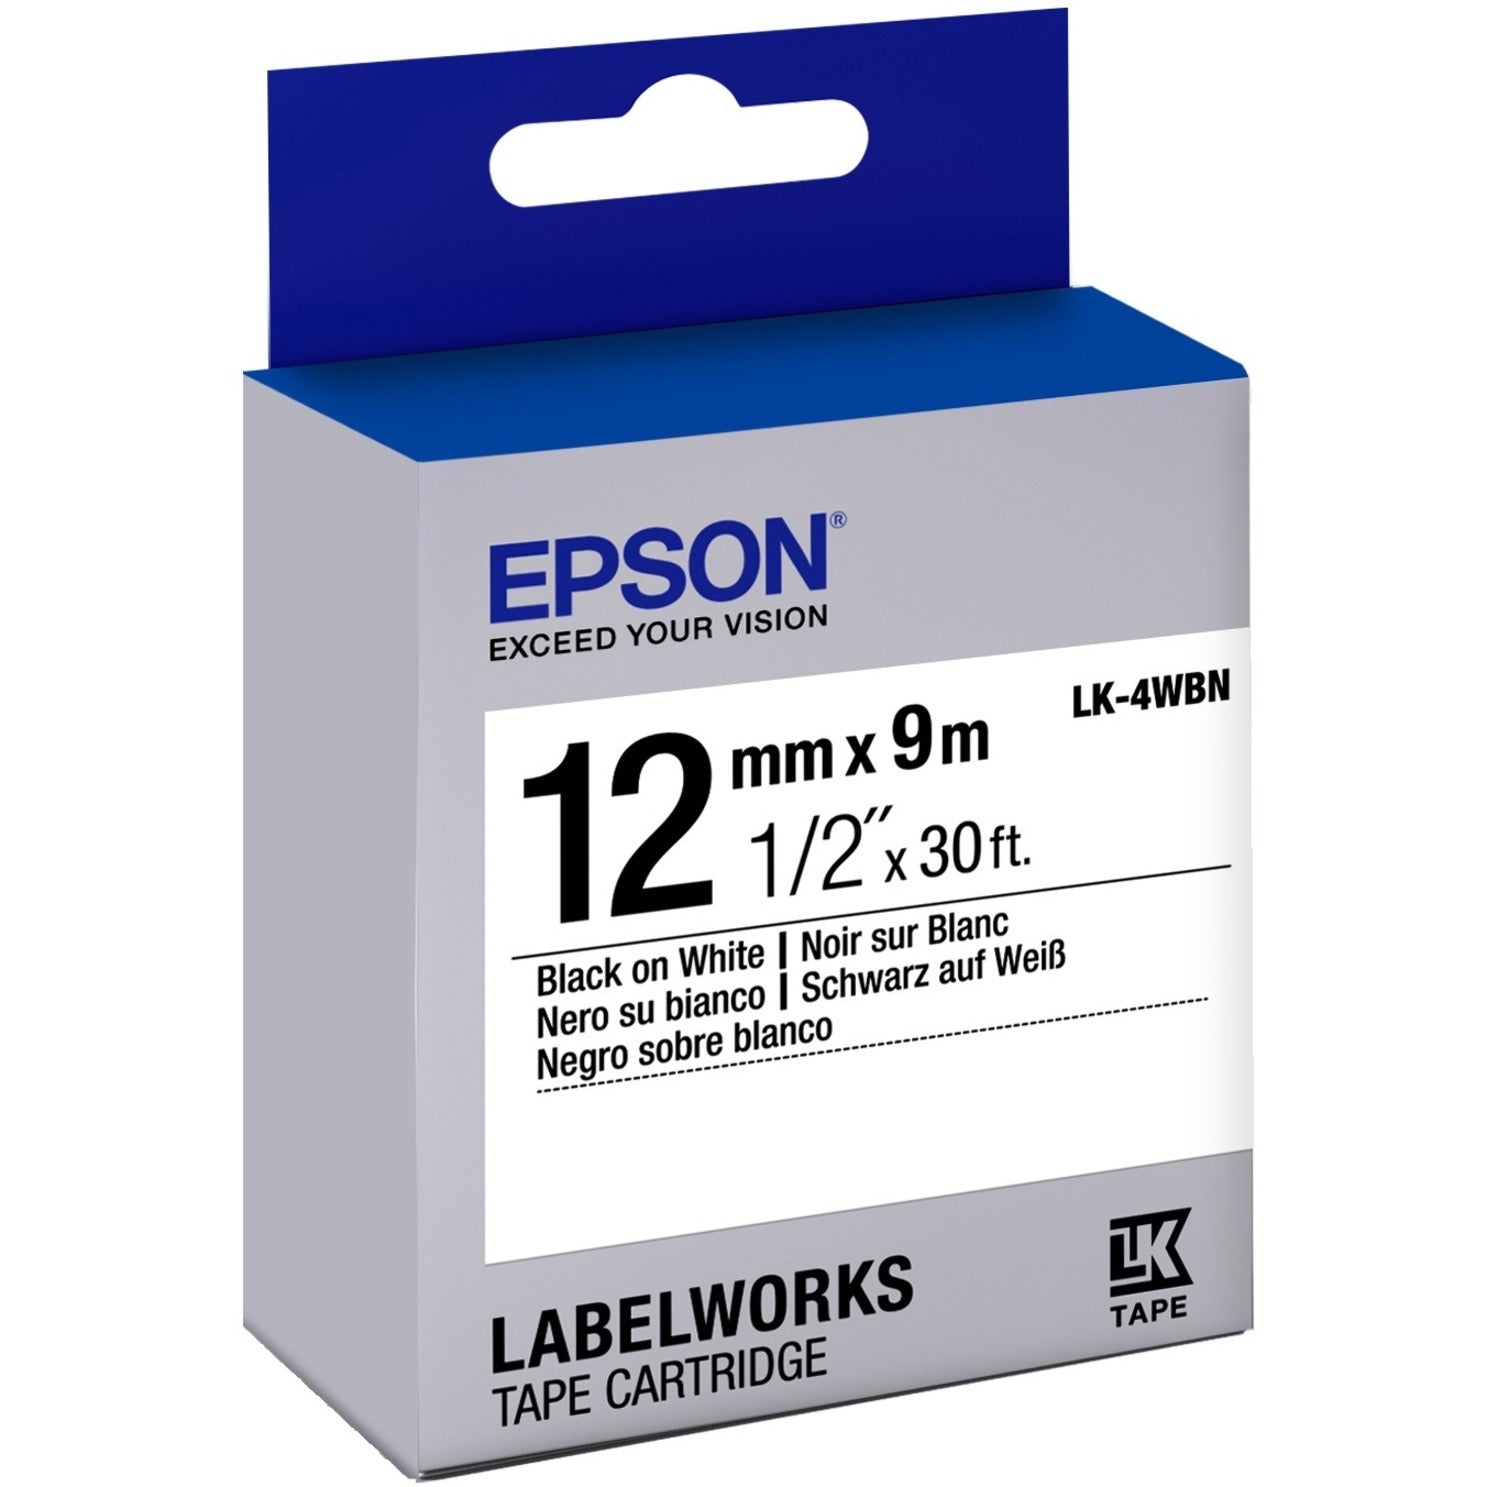 Epson LK-4WBN LabelWorks Standard Tape Cartridge ~1/2" Black on White, Easy Peel